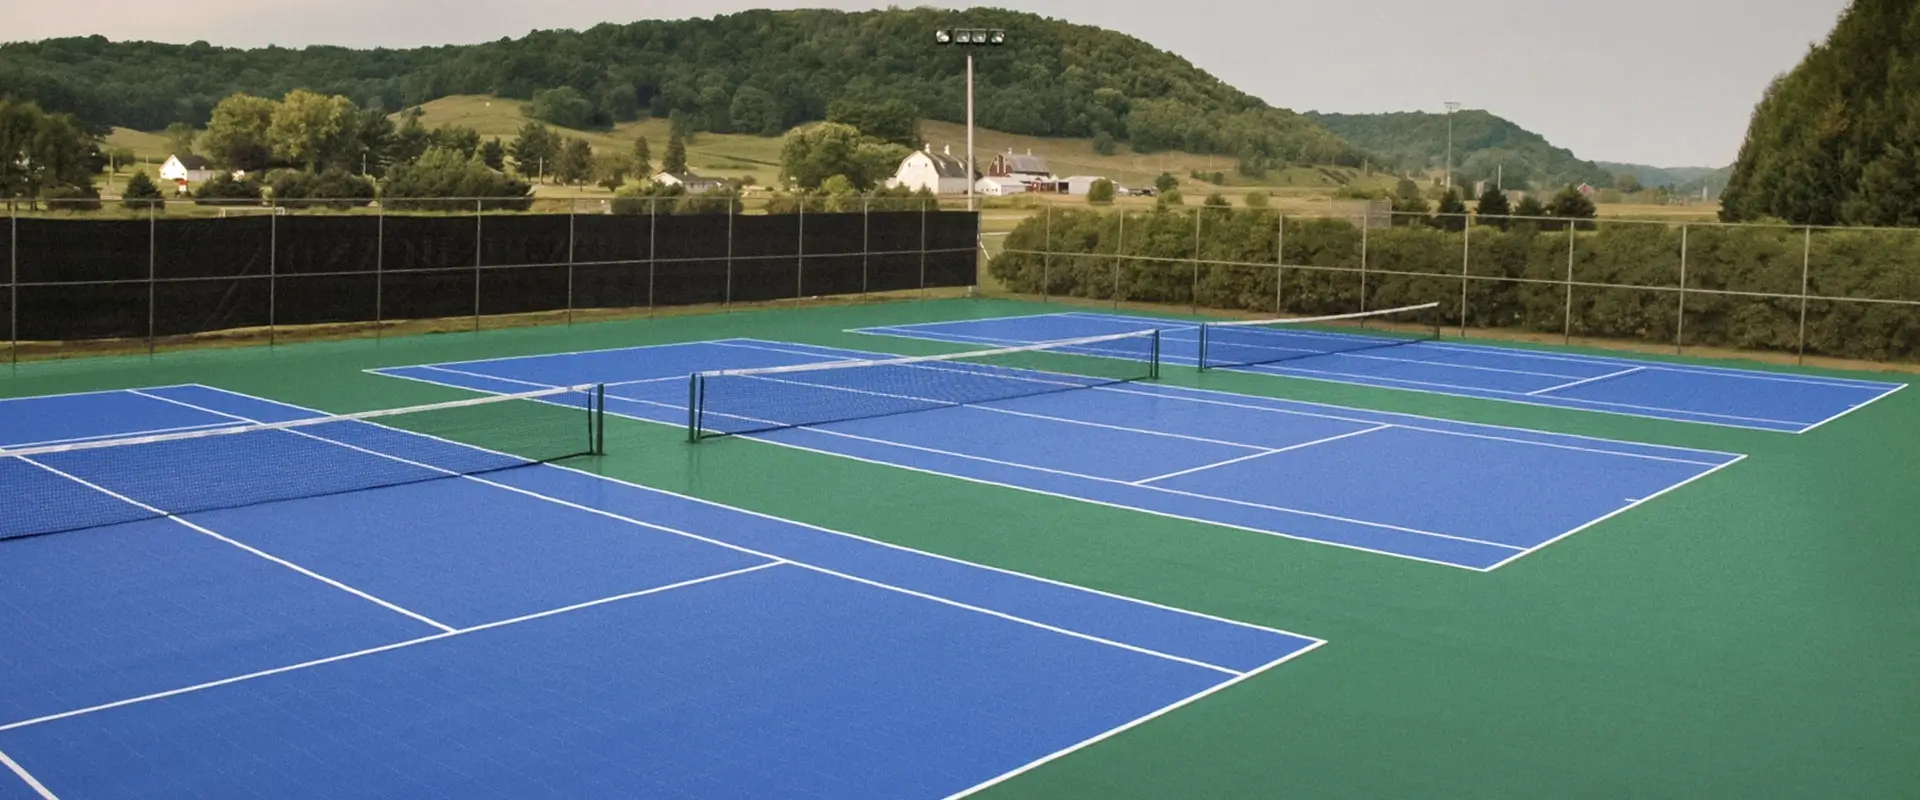 Outdoor tennis facility